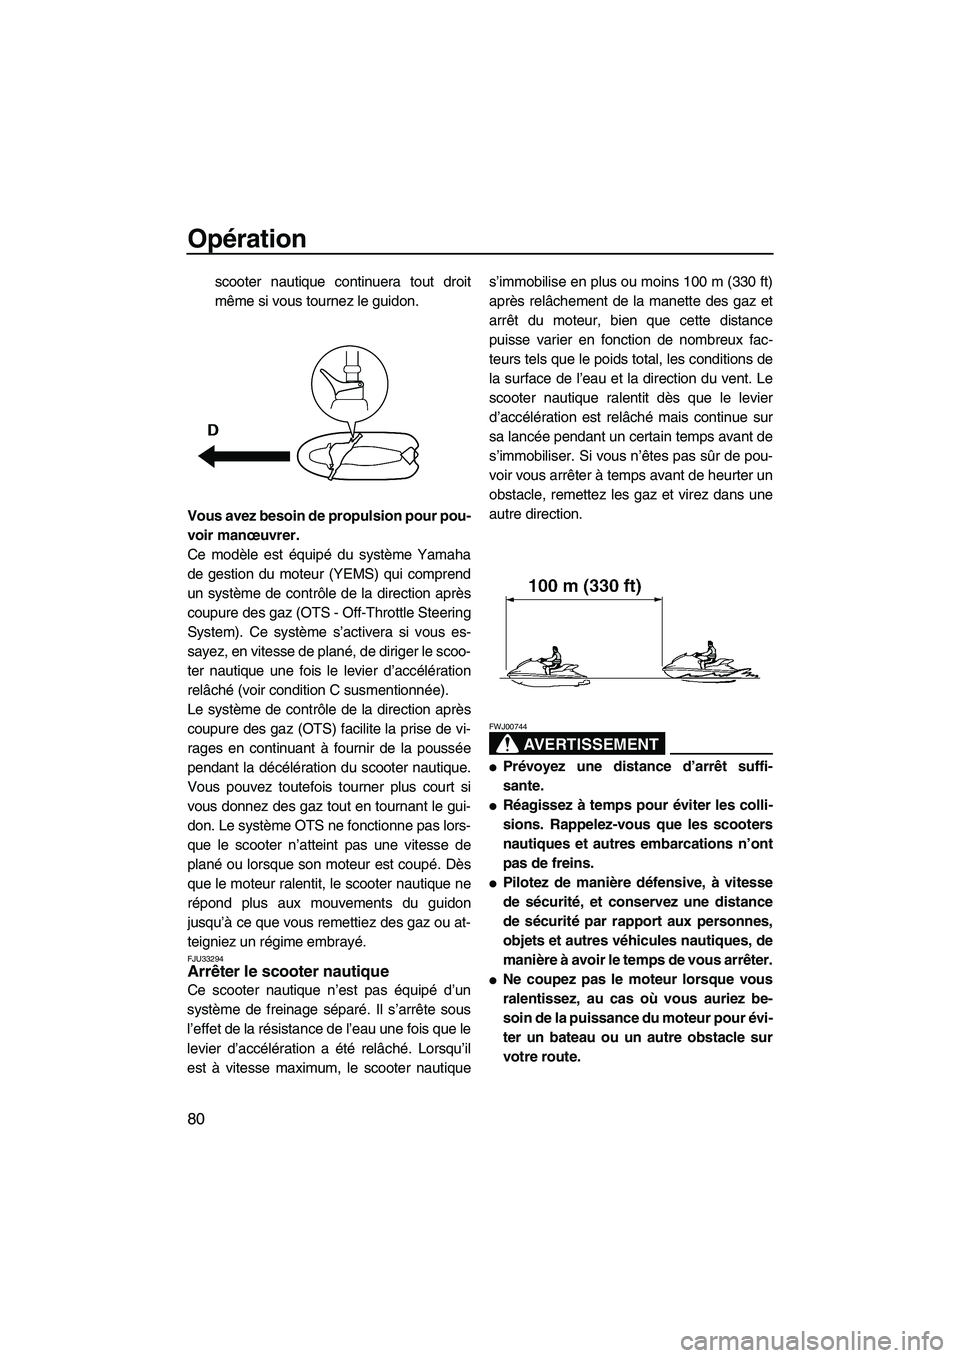 YAMAHA SVHO 2011  Notices Demploi (in French) Opération
80
scooter nautique continuera tout droit
même si vous tournez le guidon.
Vous avez besoin de propulsion pour pou-
voir manœuvrer.
Ce modèle est équipé du système Yamaha
de gestion du